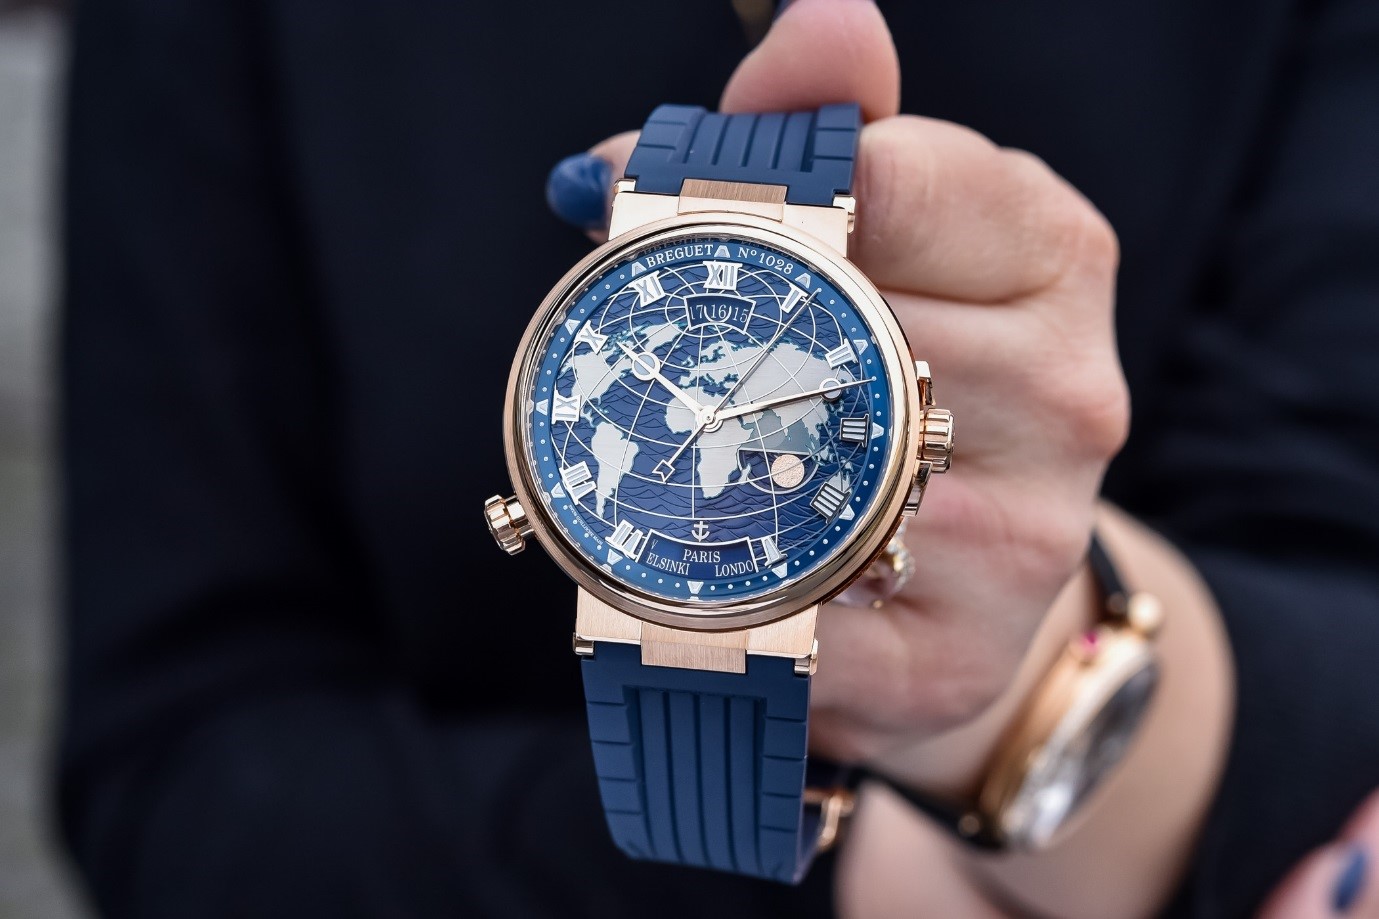 Breguet – thương hiệu đồng hồ lớn được ra đời tại Pháp vào năm 1775